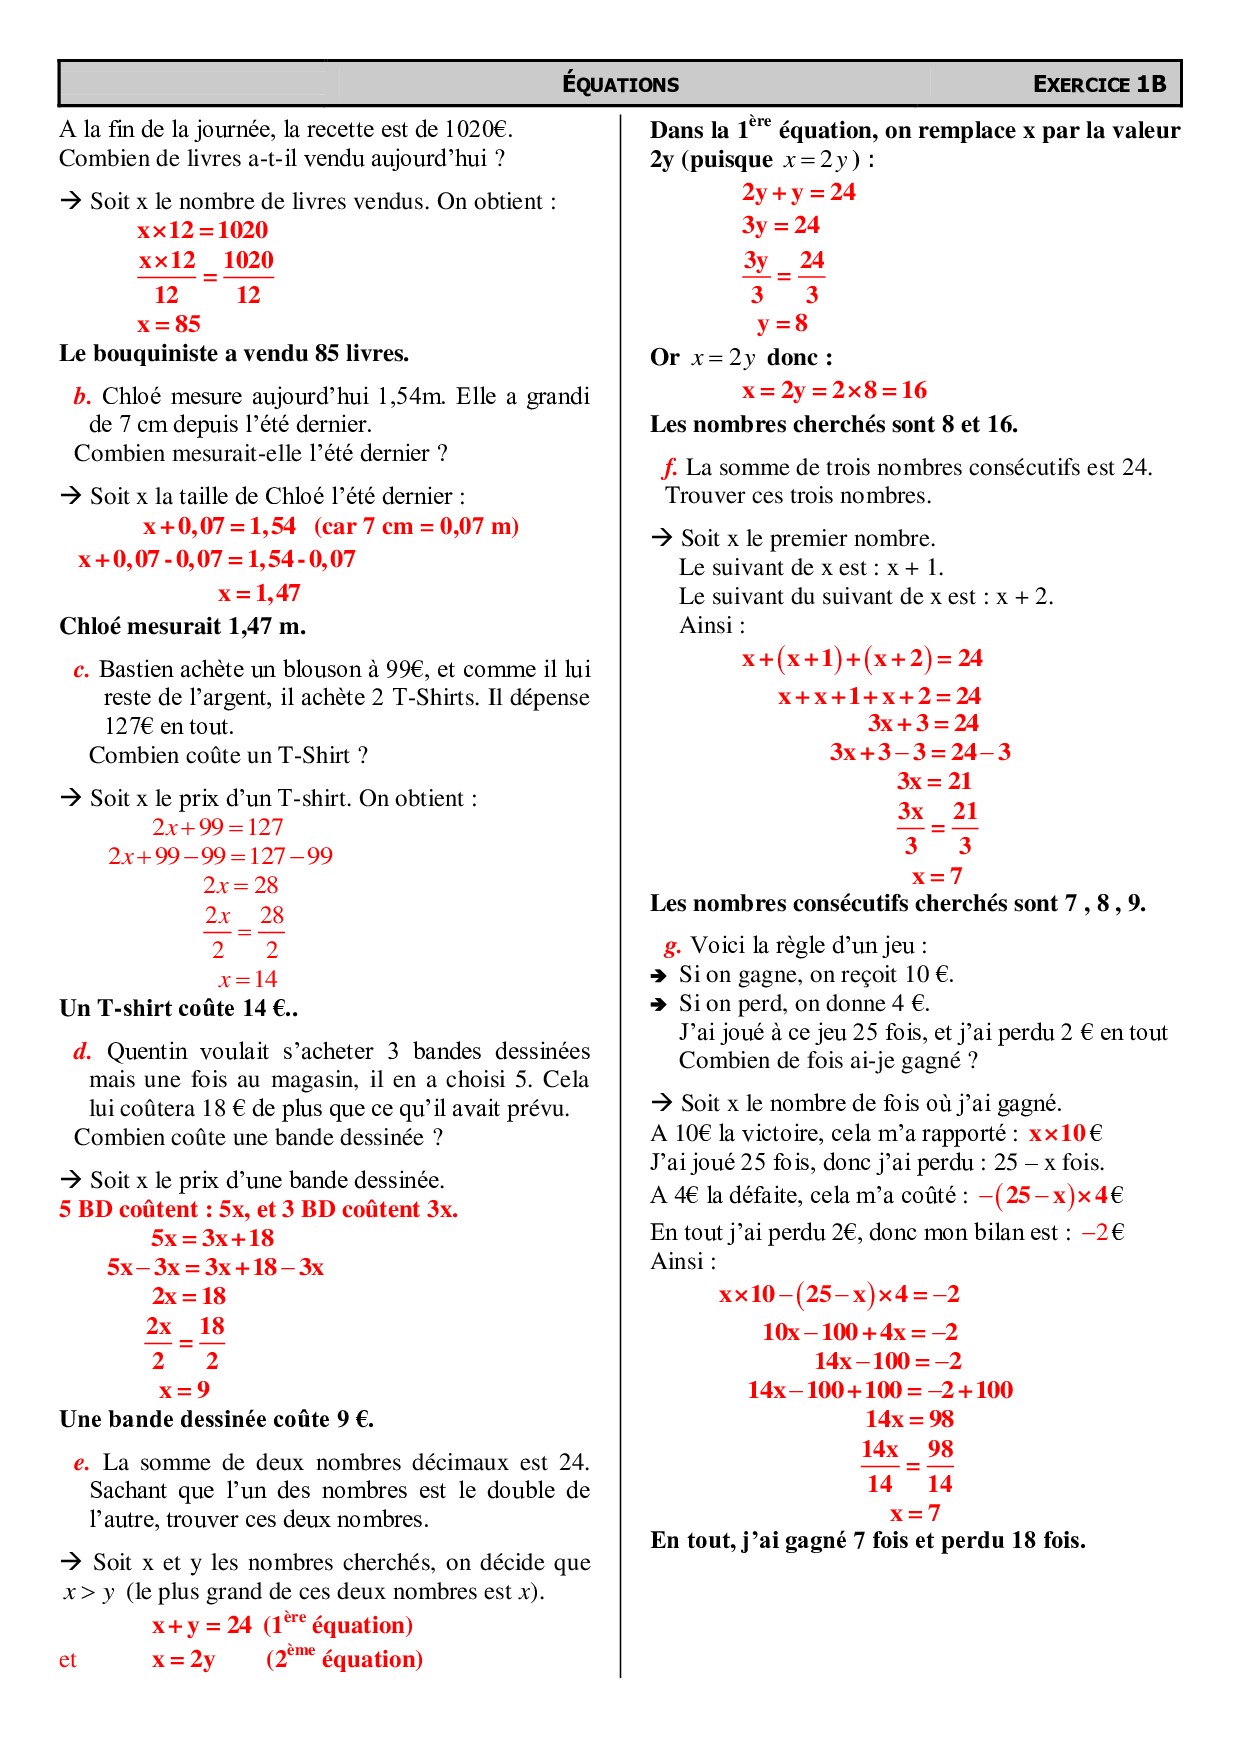 Résoudre un problème avec une équation: leçon et exercices 4ème